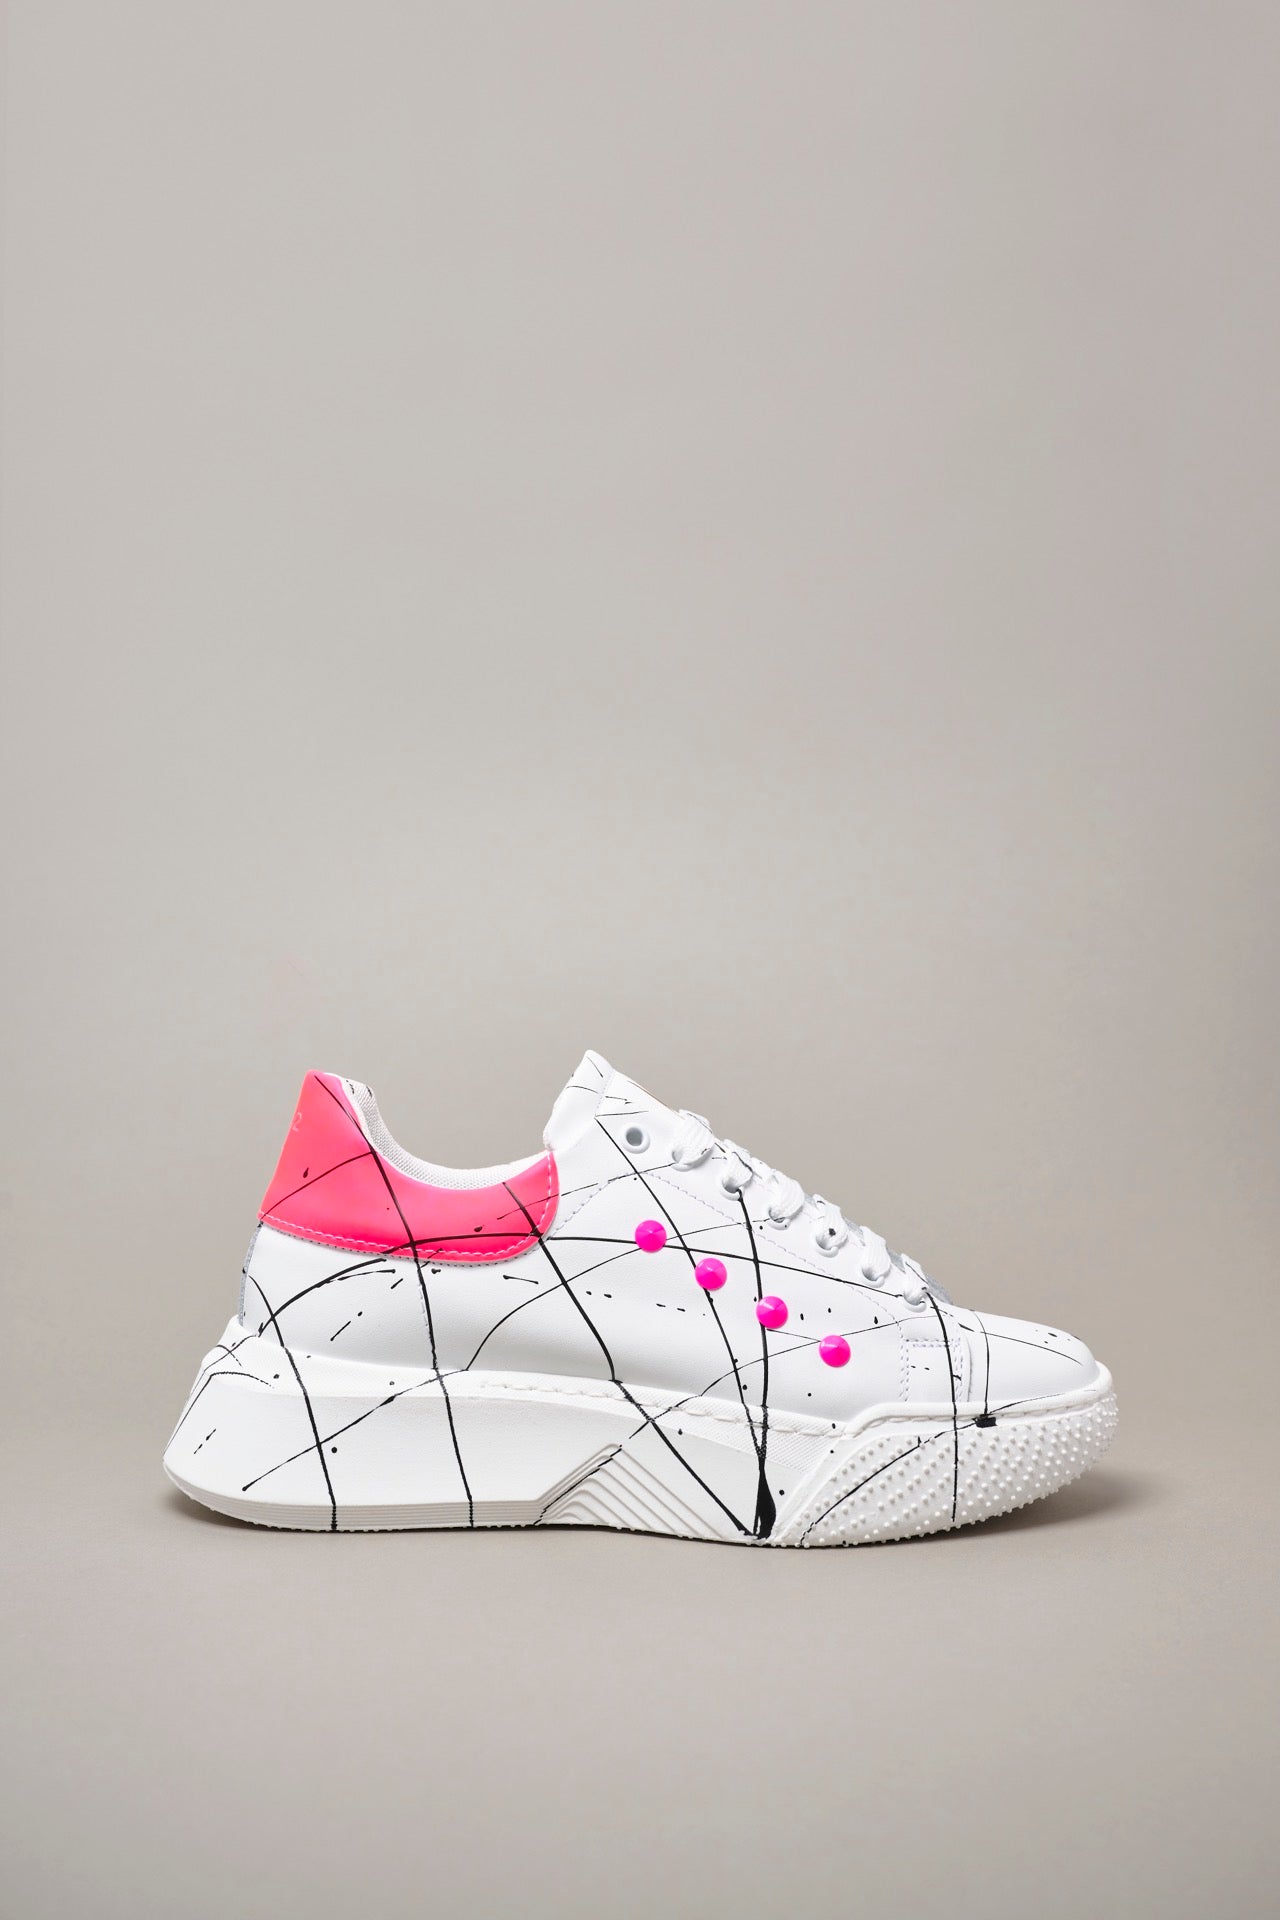 SUPERNOVA - Sneakers a suola alta retro e borchie Rosa Fluo con schizzi di vernice